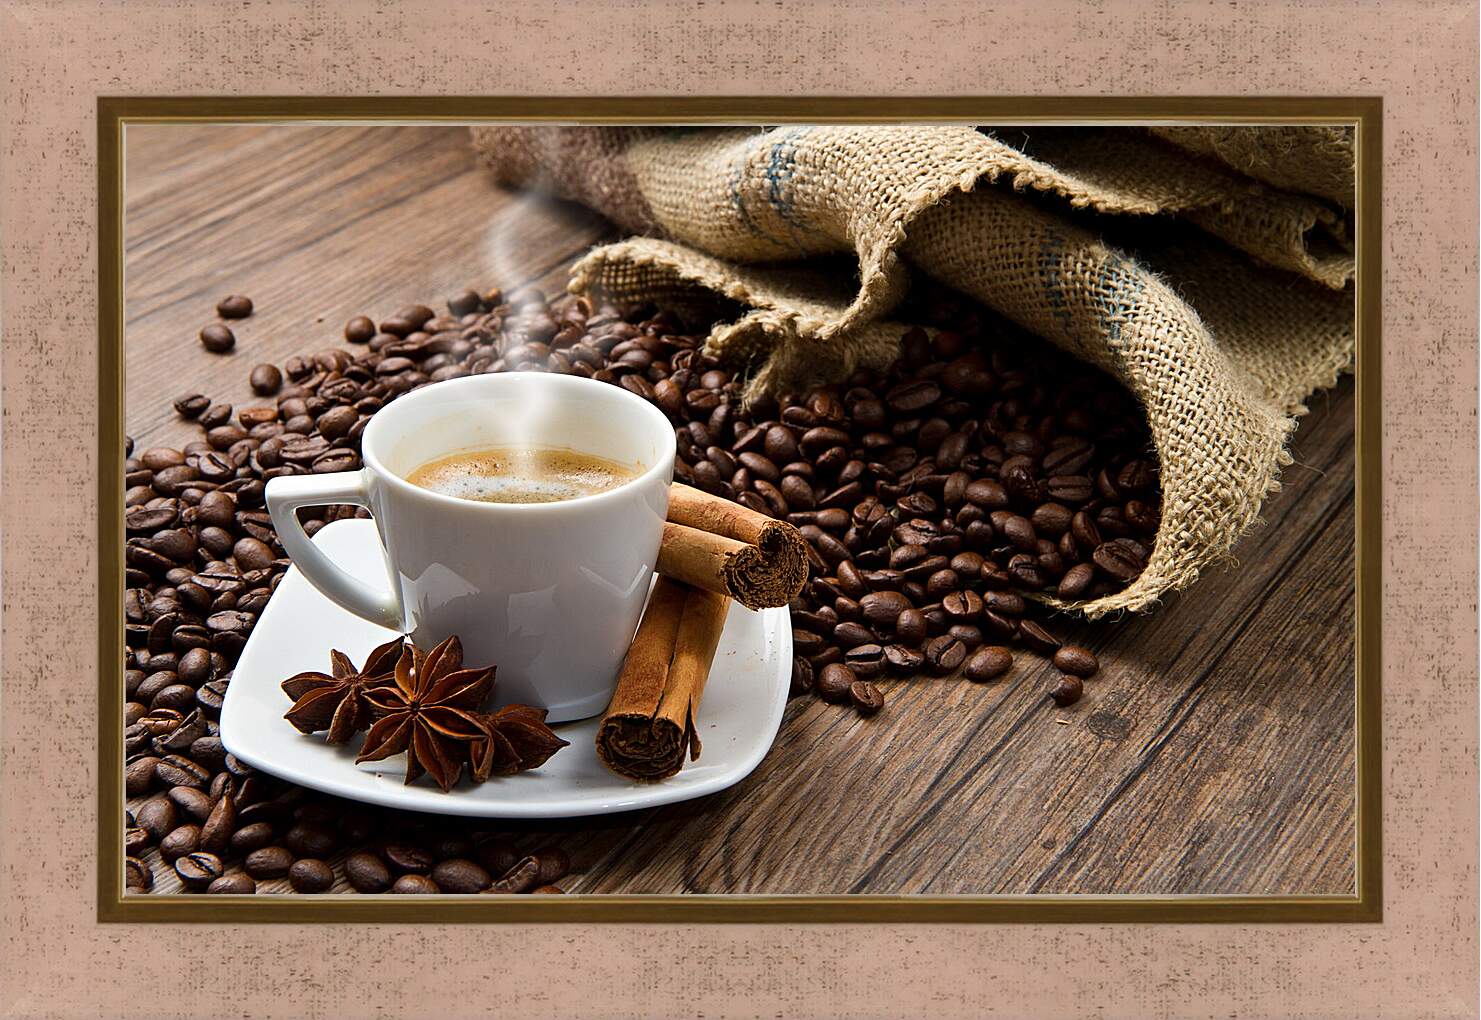 Картина в раме - Чашка кофе с блюдцем и мешок с зёрнами кофе